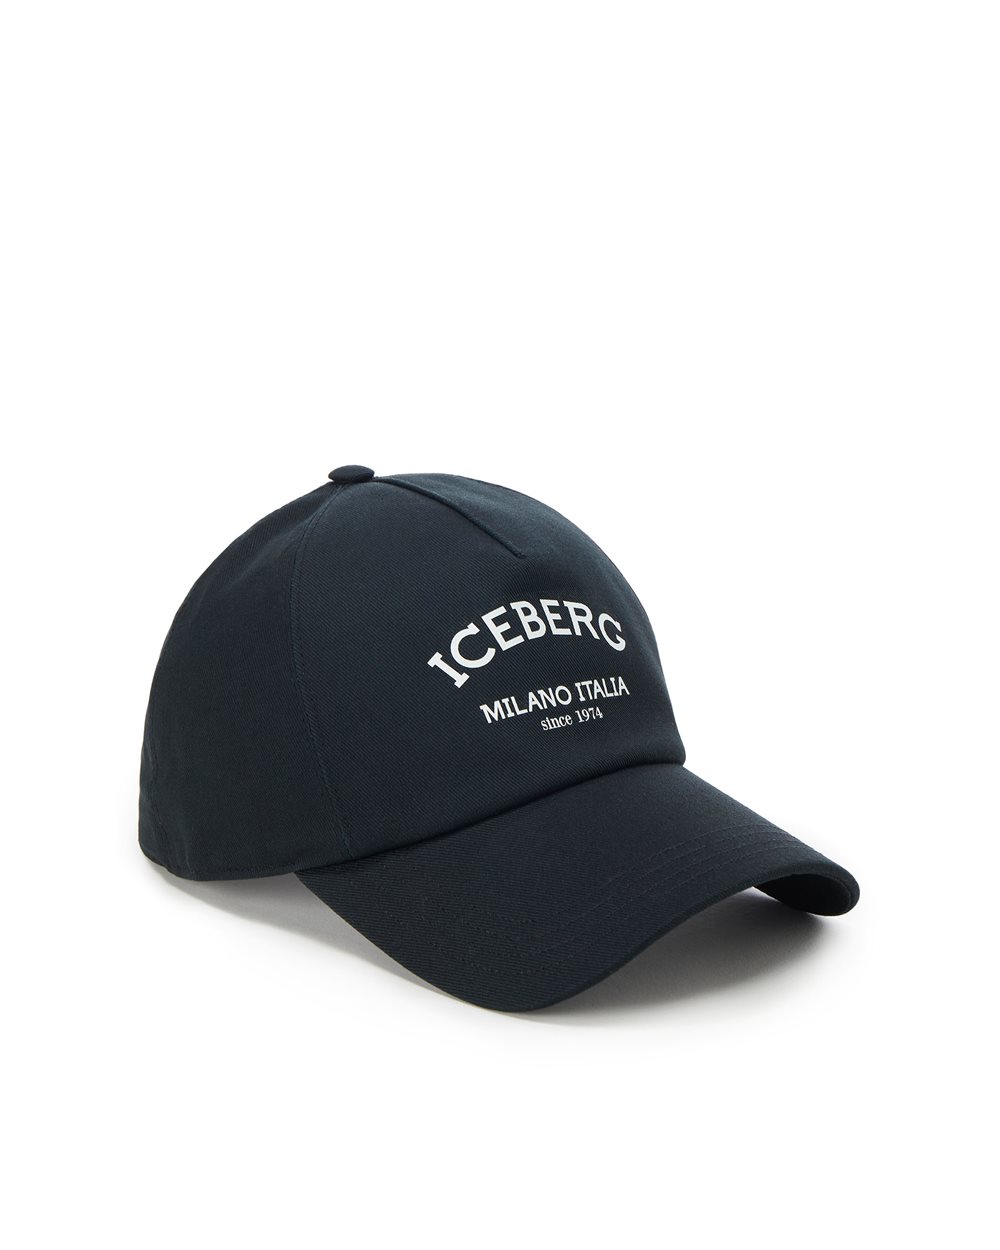 Cotton gabardine baseball cap - carosello preview donna | Iceberg - Official Website